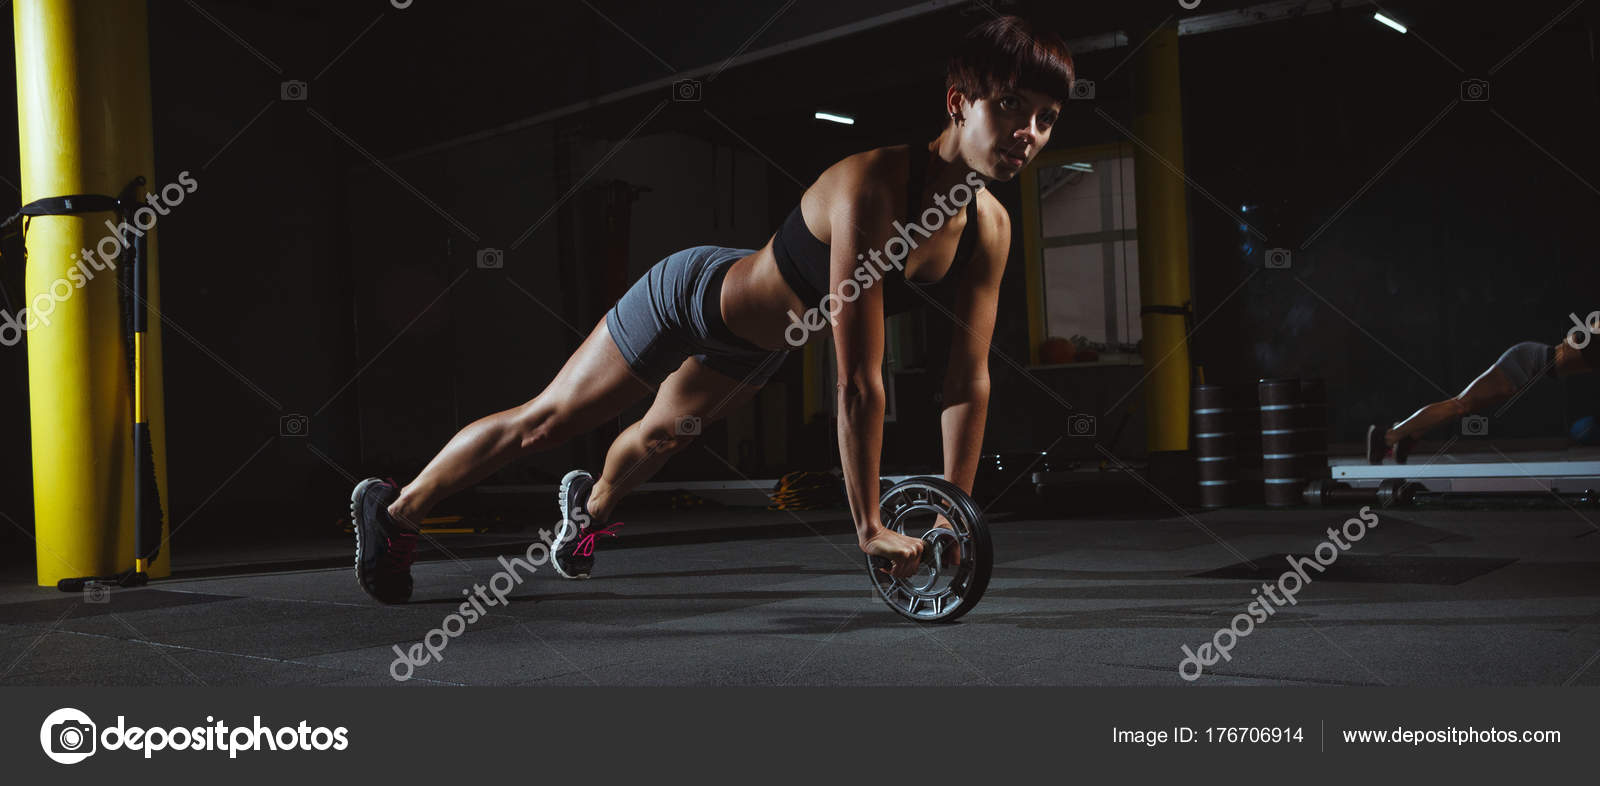 Fitness pige gør crossfit øvelser i fitnesscenter med hjul i mørke —  Stock-foto © TavRox #176706914